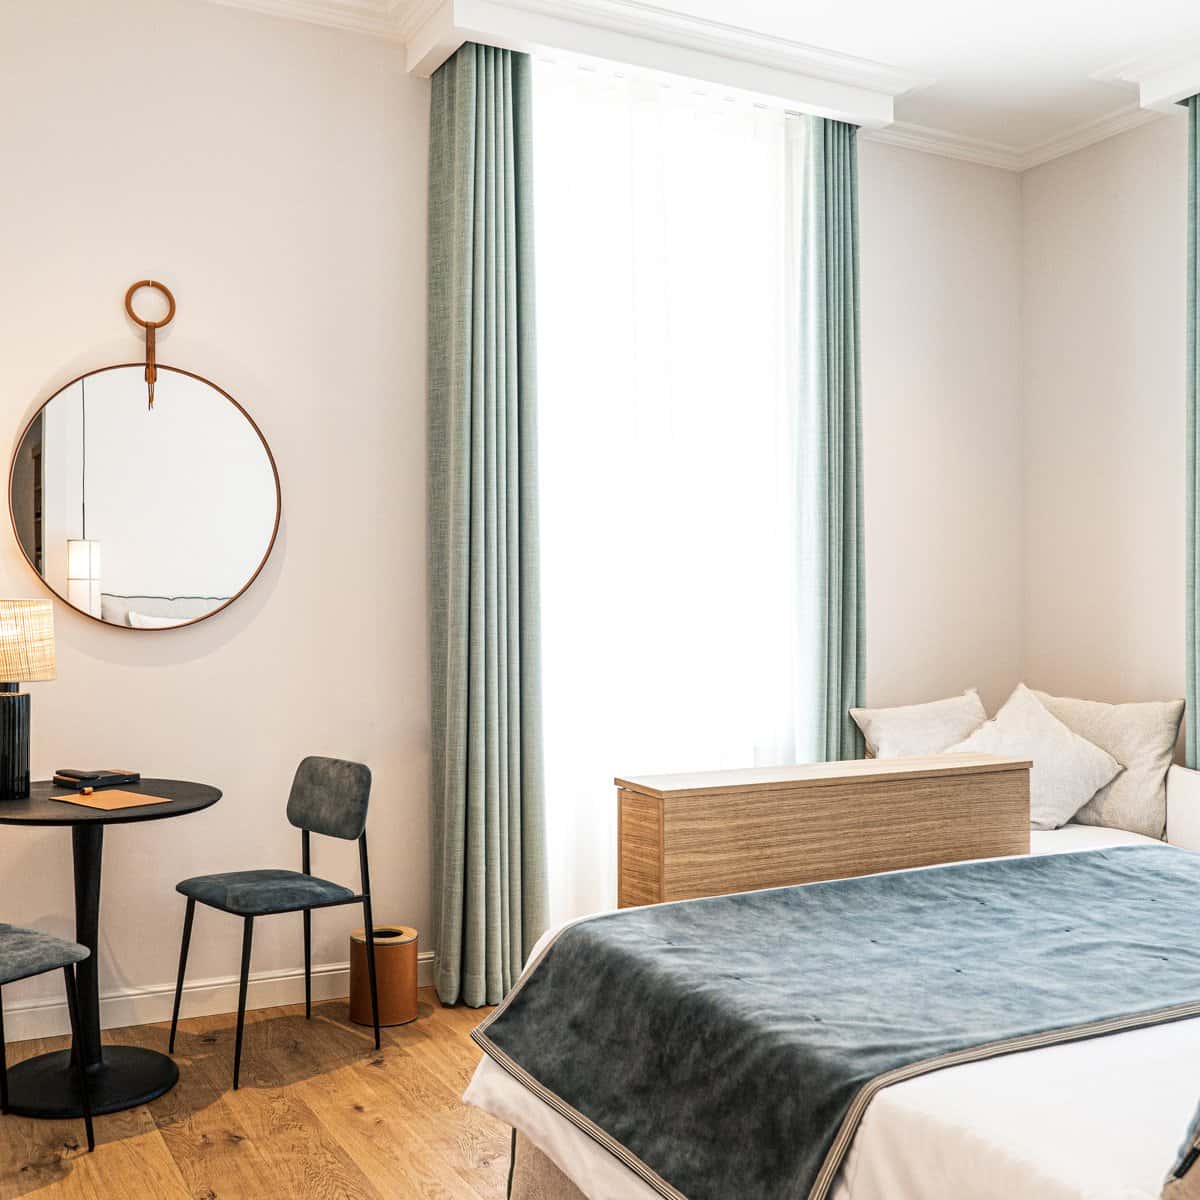 Chambre double deluxe à l'Hôtel Le Mosaïque avec lit bleu, miroir et table, ambiance cosy.